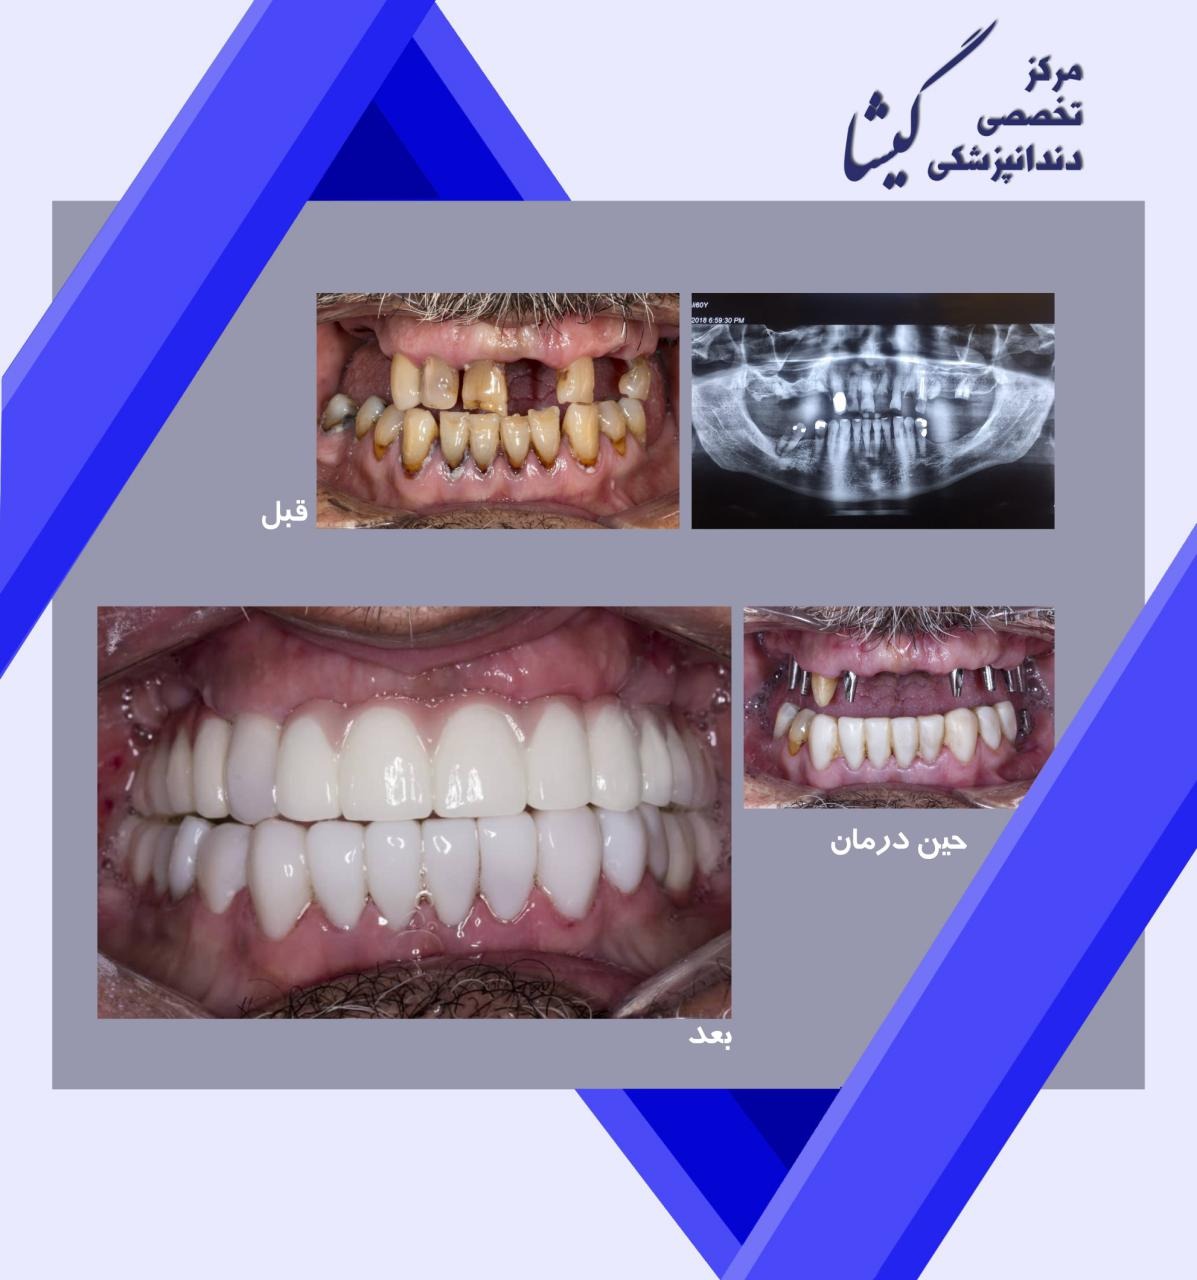 بازسازی کل دندانهای بالا و پایین با ترکیبی از ایمپلنت و روکش تمام سرامیک و کامپوزیت توسط متخصص ایمپلنت و پروتزهای دندانی در تهران